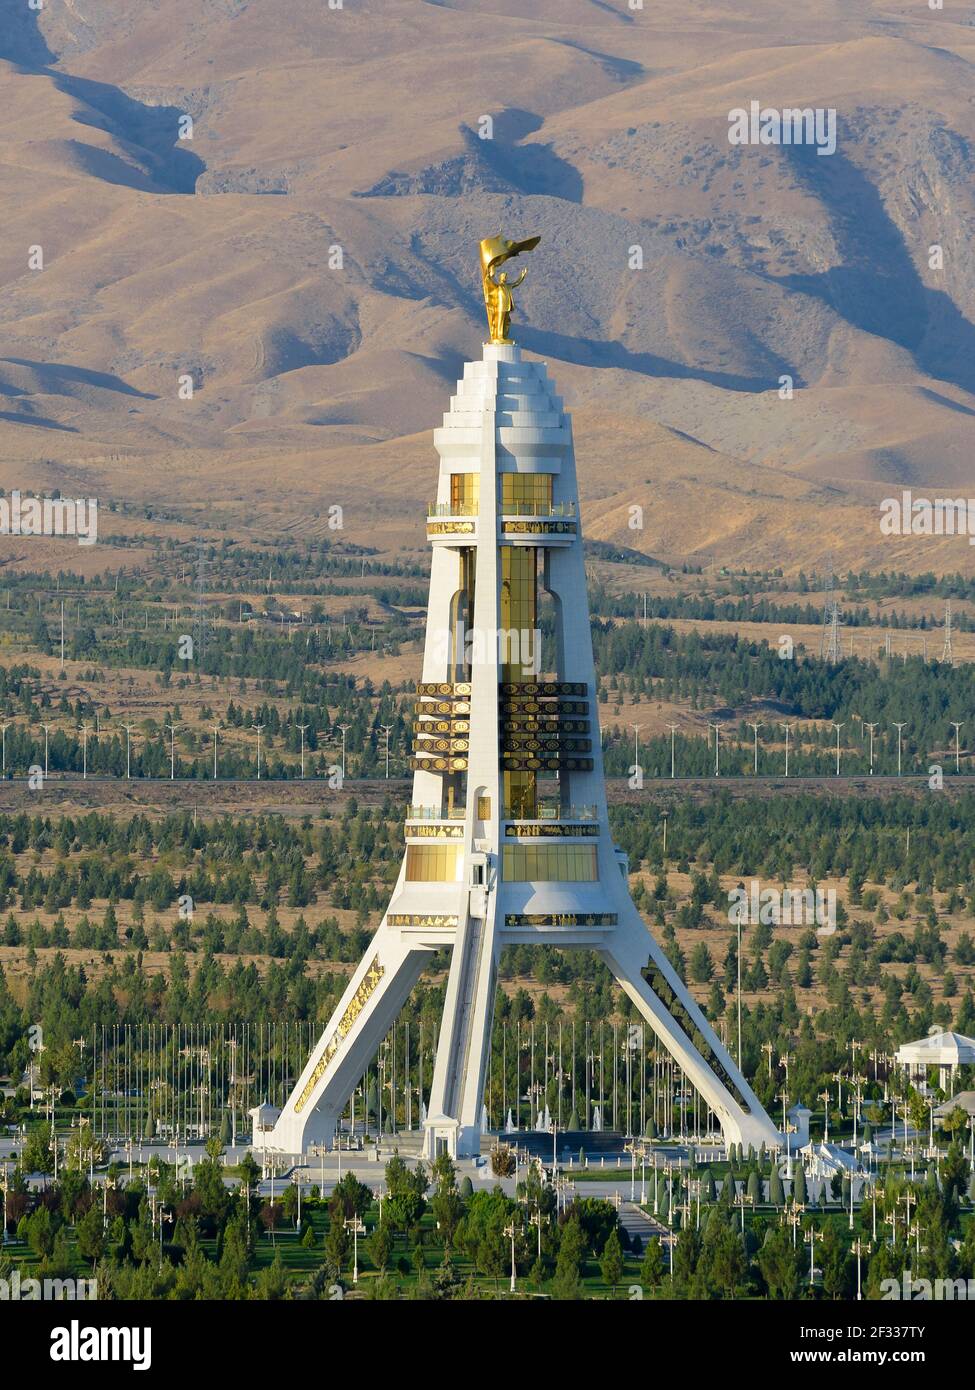 Monumento de neutralidad en Ashgabat, Turkmenistán construido con mármol blanco. Sapormurat Niyazov estatua de oro en la parte superior. Arco de neutralidad. Foto de stock